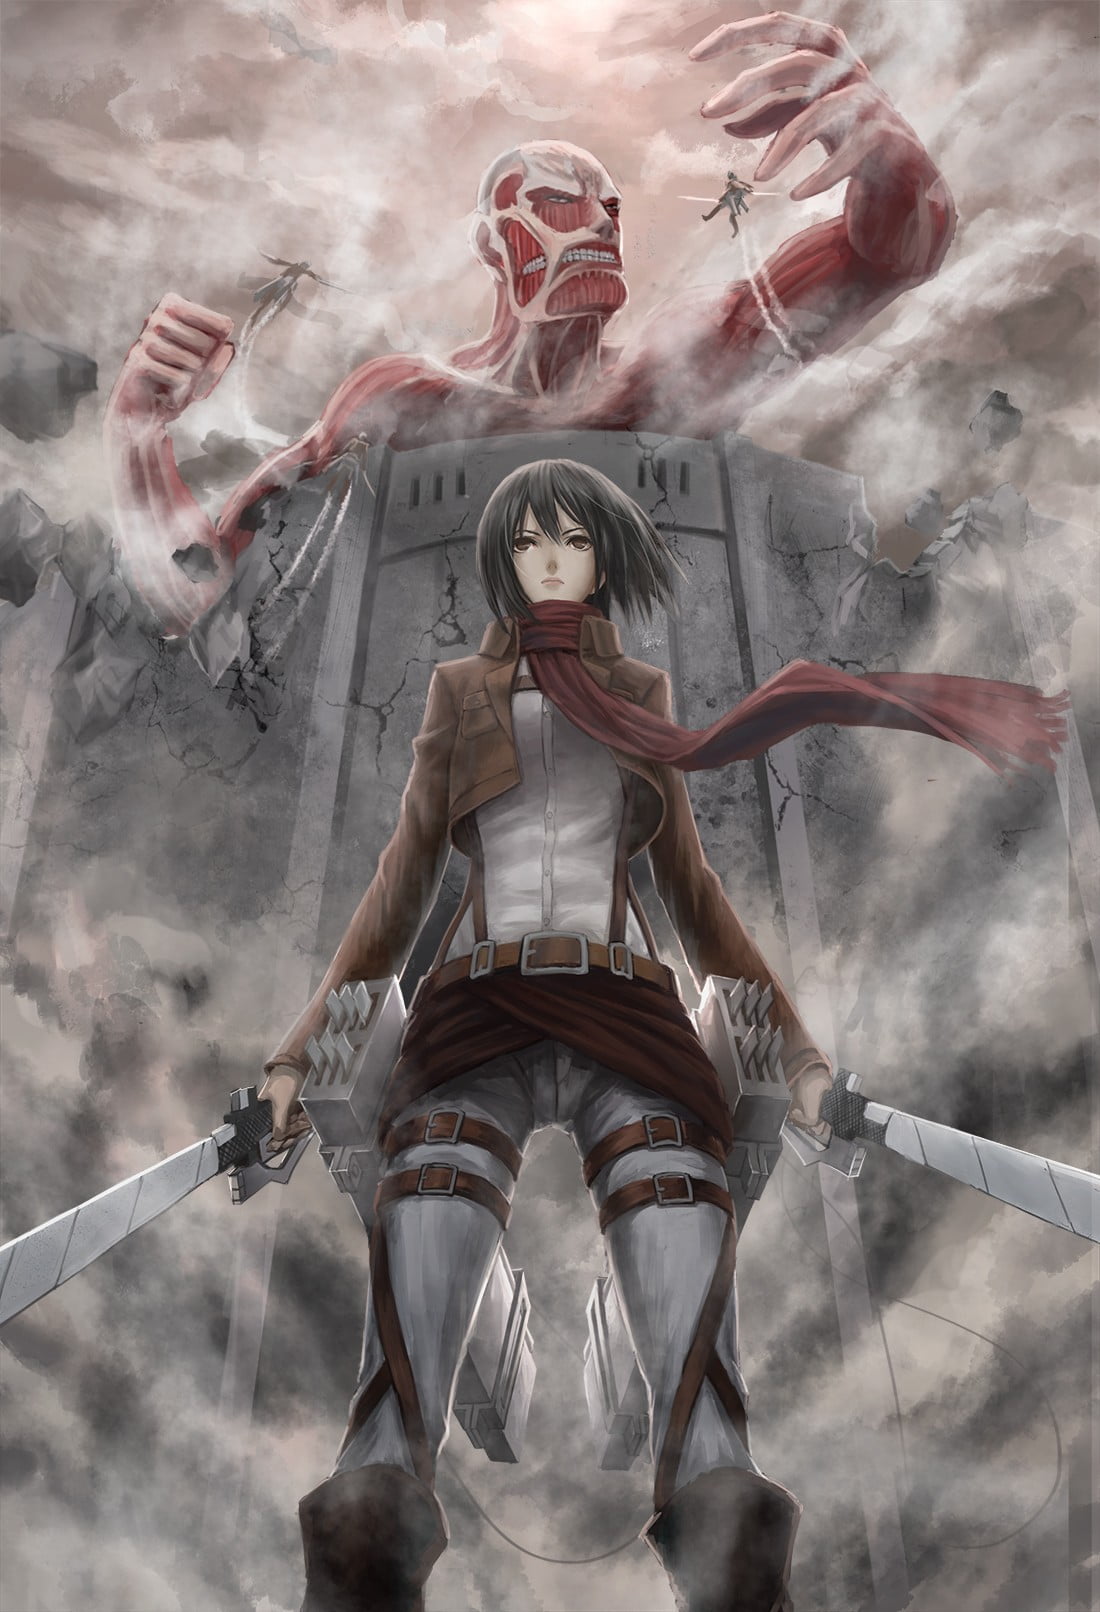 Attack on Titan Mikasa Ackerman digital wallpaper, Shingeki no Kyojin